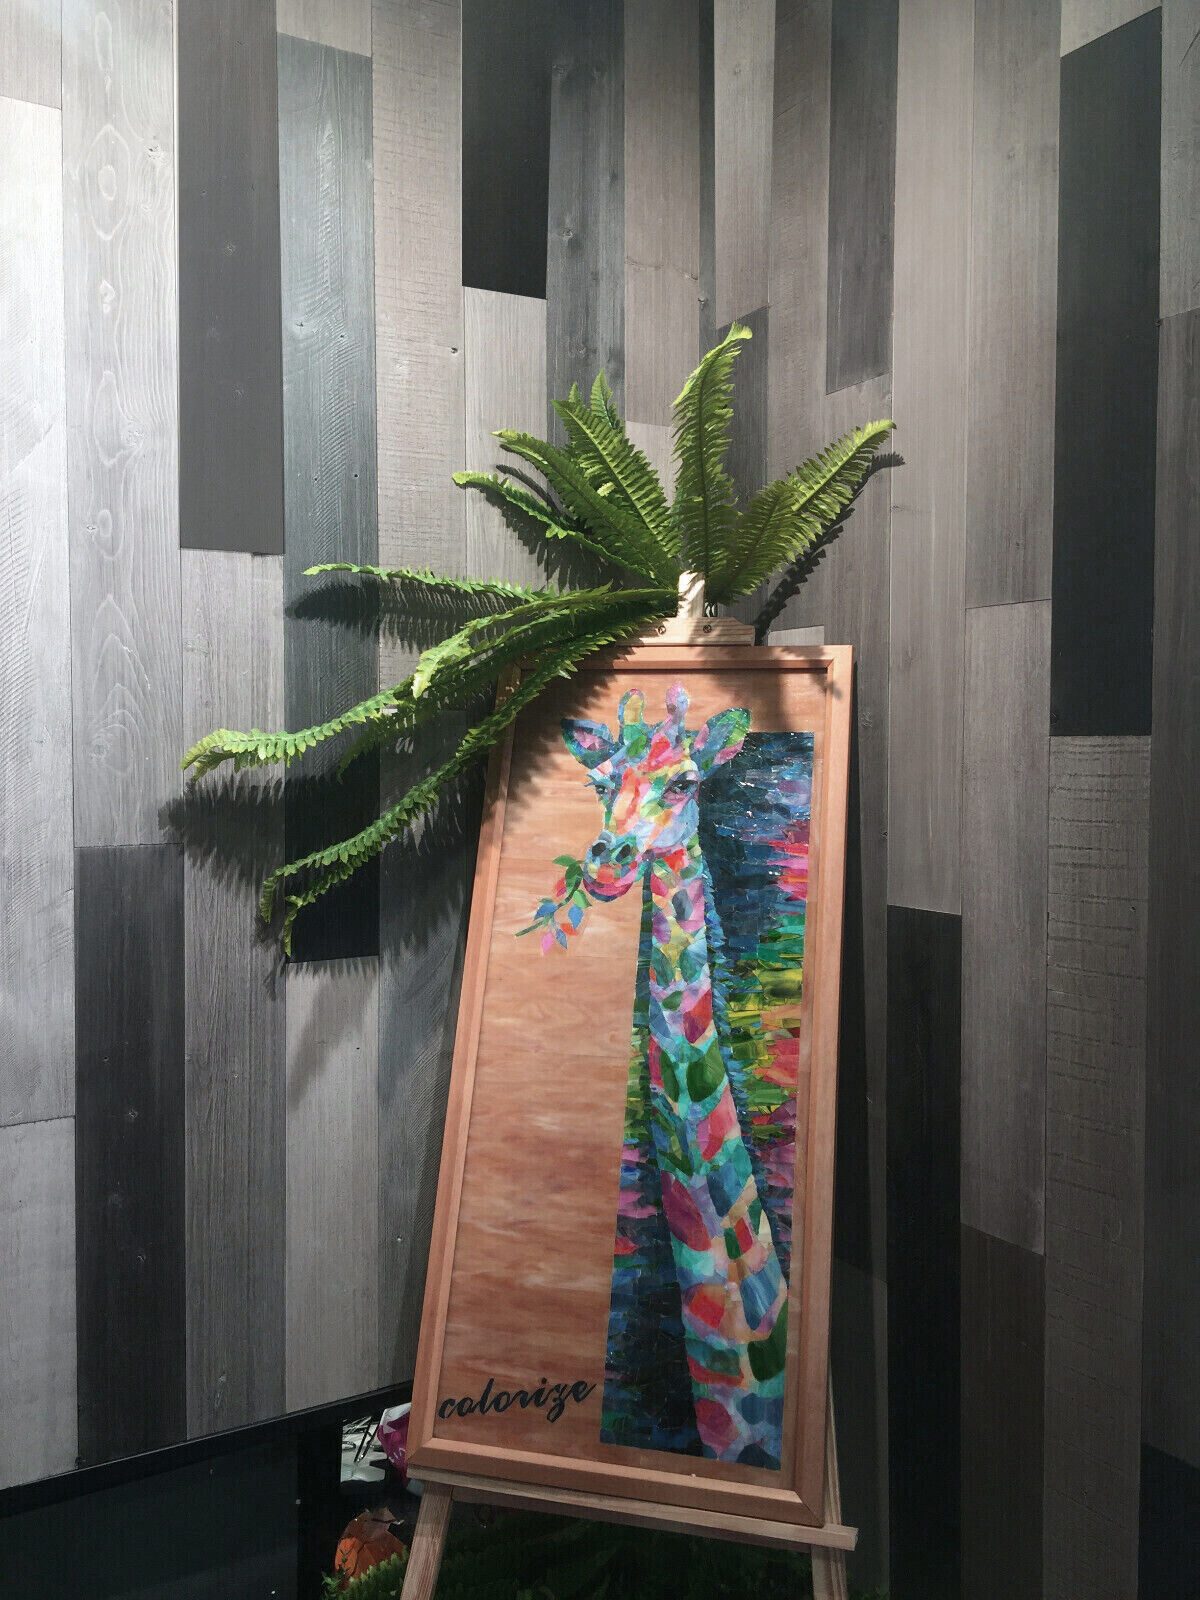 Mosani Dekorpaneele drei Farben Mix selbstklebende Holzverkleidung für Wand- und Decke, BxL: 90,00x90,00 cm, (1,04m² im Set, 9-teilig) ultraleicht als Küchenrückwand, Spritzschutz, Echtholz Wandverblender